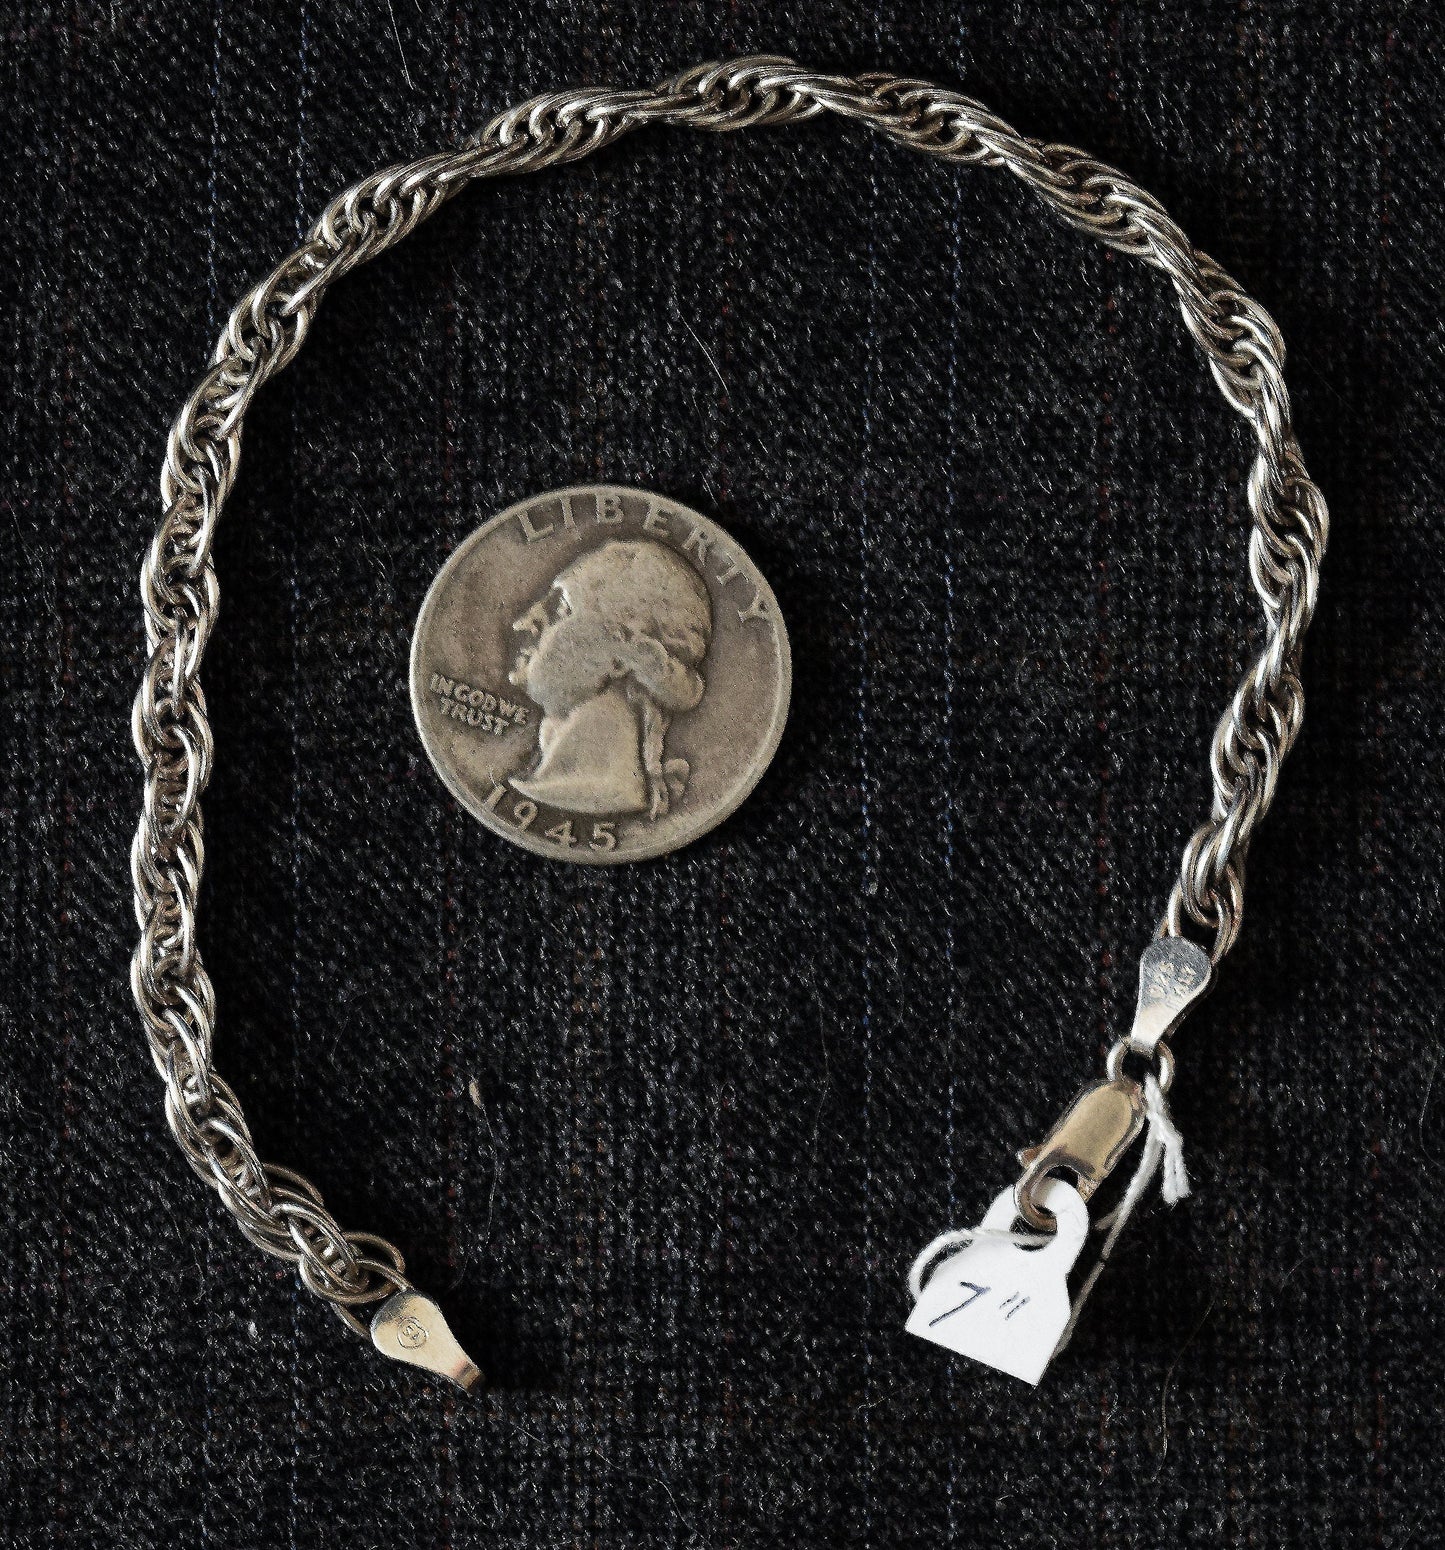 7 inch, open weave, sterling silver rope bracelet